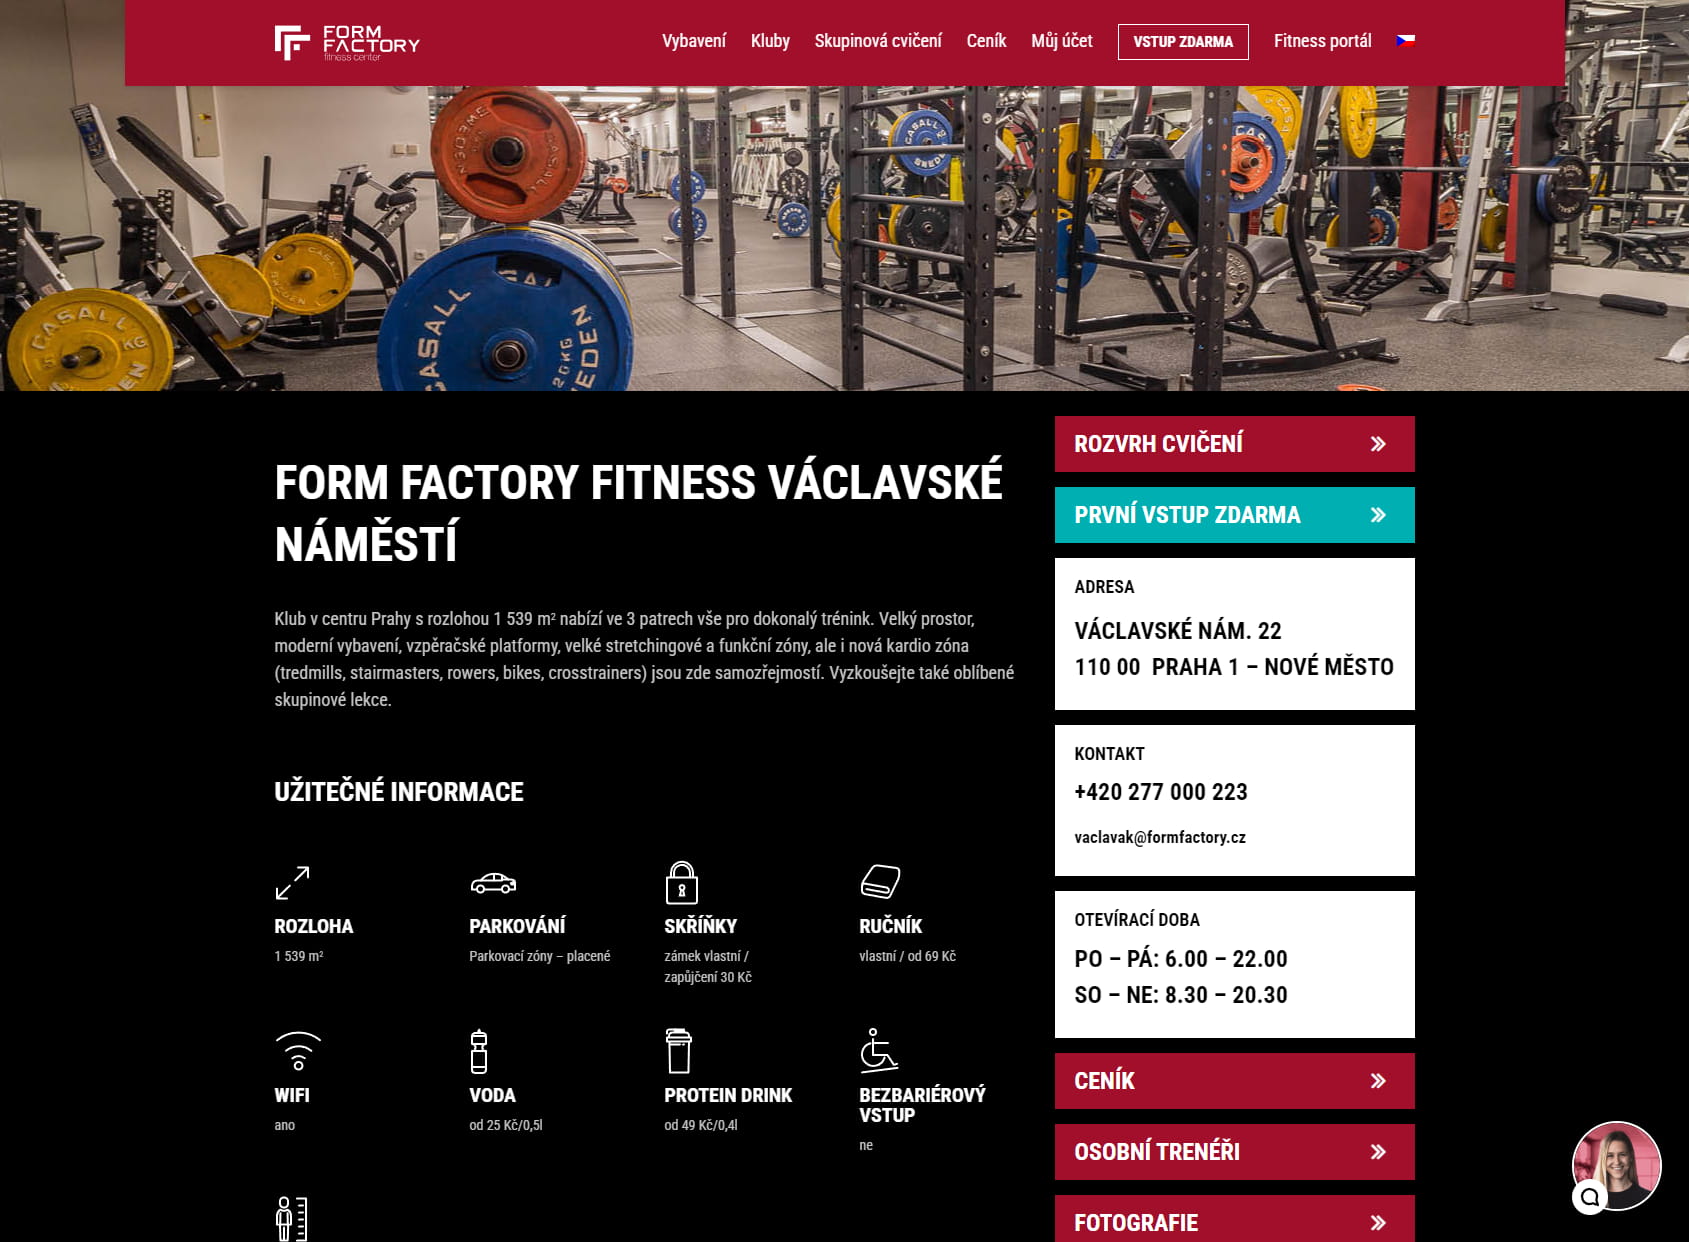 Form Factory Fitness Center Václavské náměstí